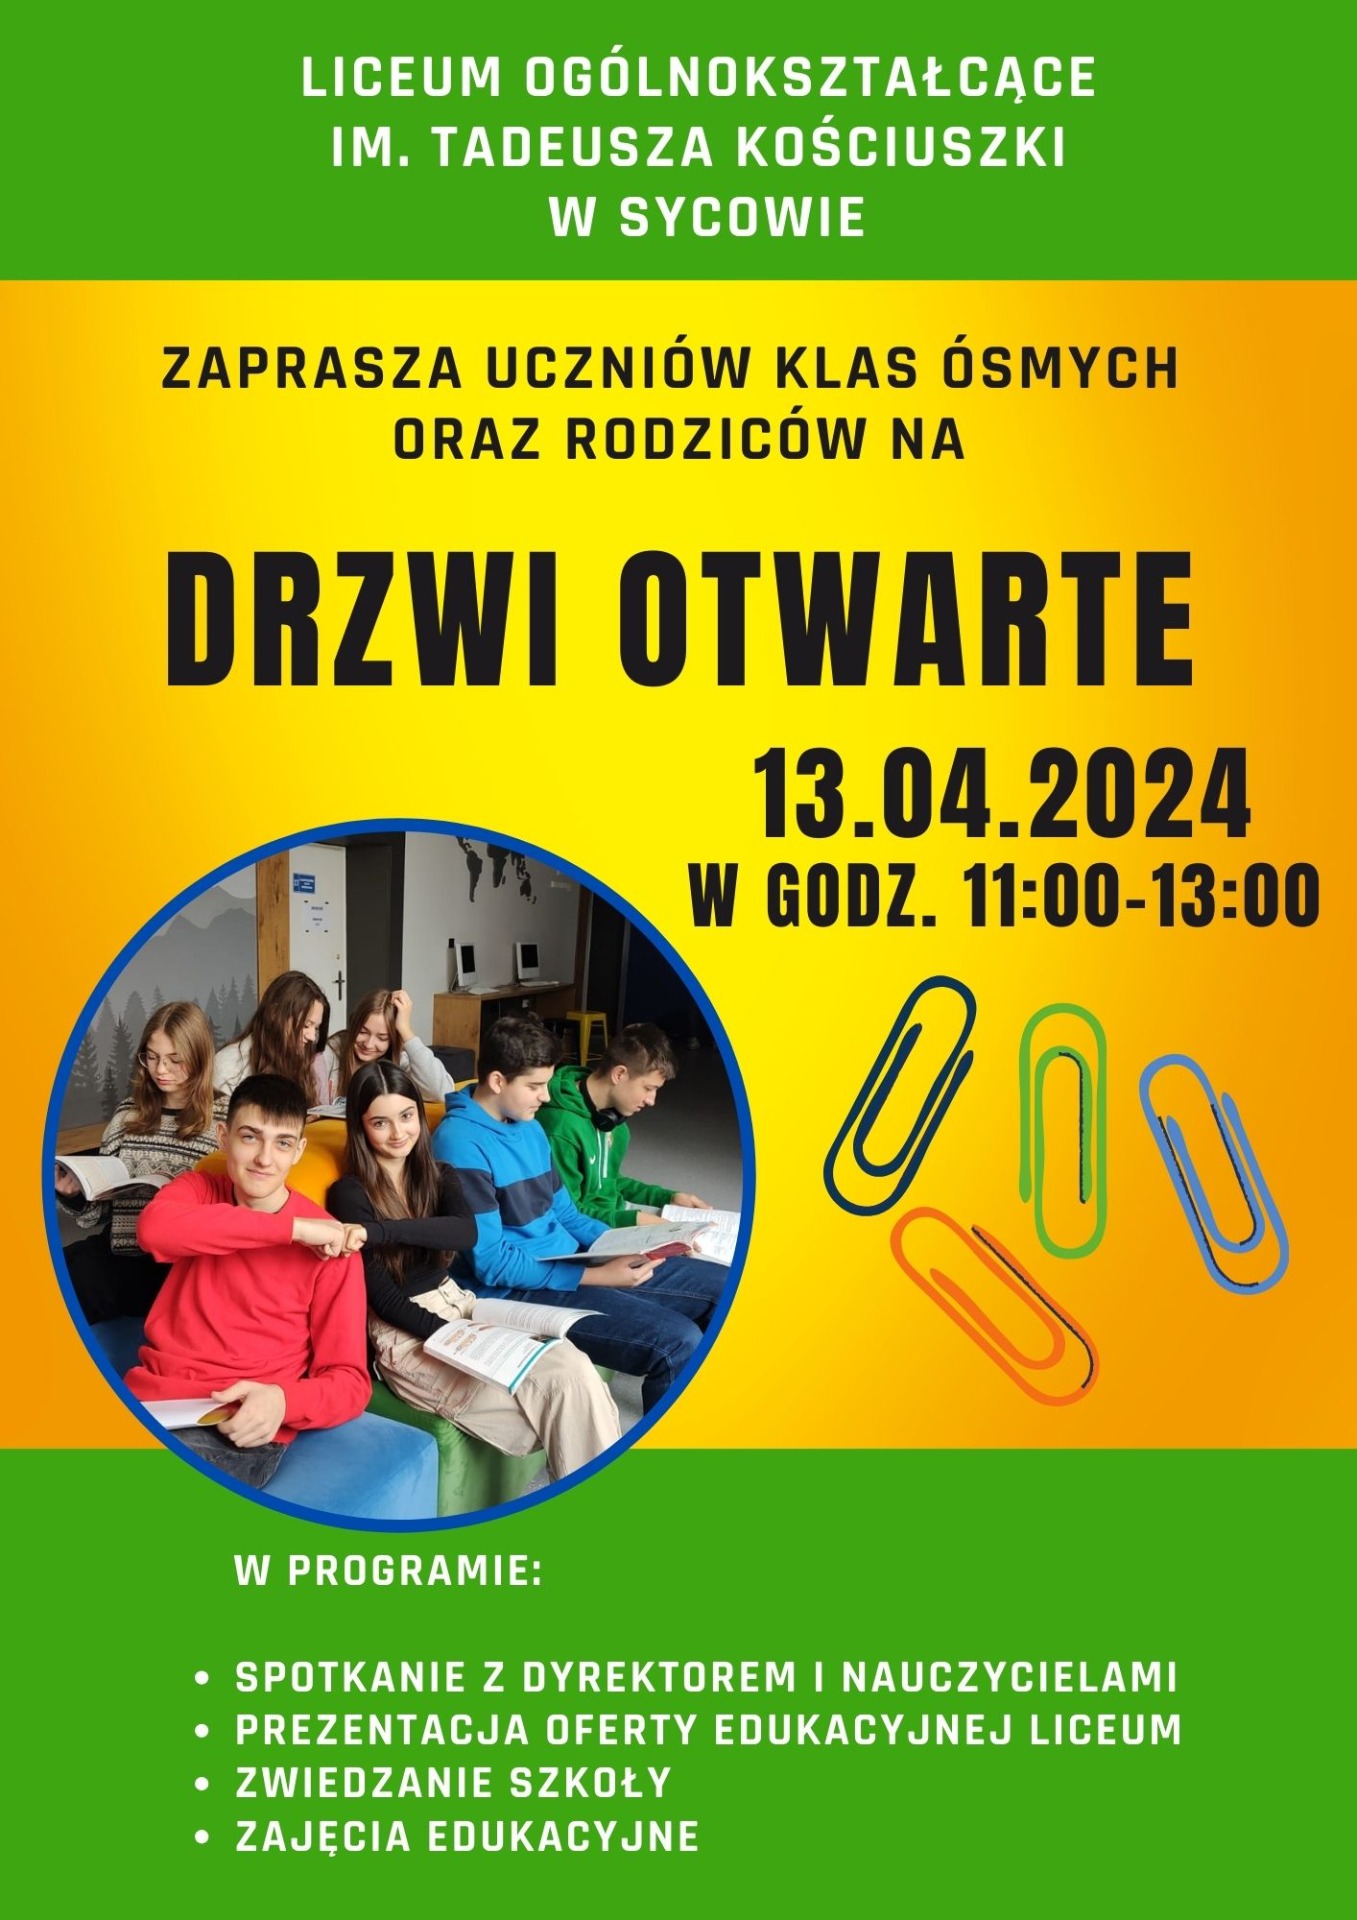 Oferta Edukacyjna Liceum Ogólnokształcące w Sycowie.🏫 - Obrazek 1